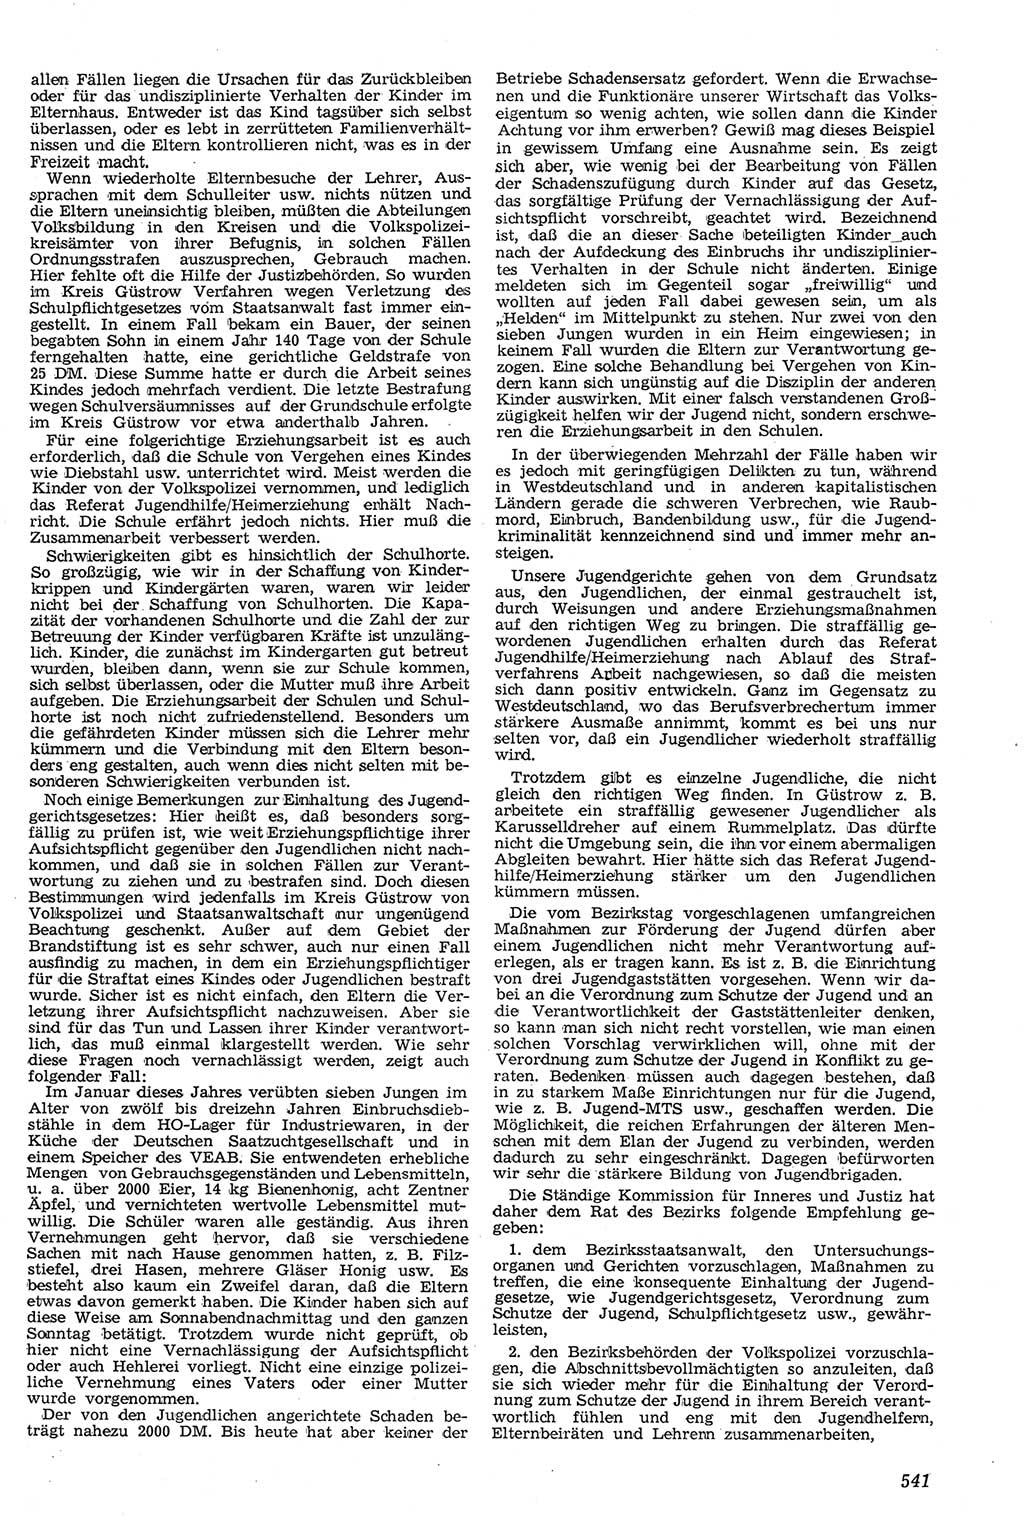 Neue Justiz (NJ), Zeitschrift für Recht und Rechtswissenschaft [Deutsche Demokratische Republik (DDR)], 11. Jahrgang 1957, Seite 541 (NJ DDR 1957, S. 541)